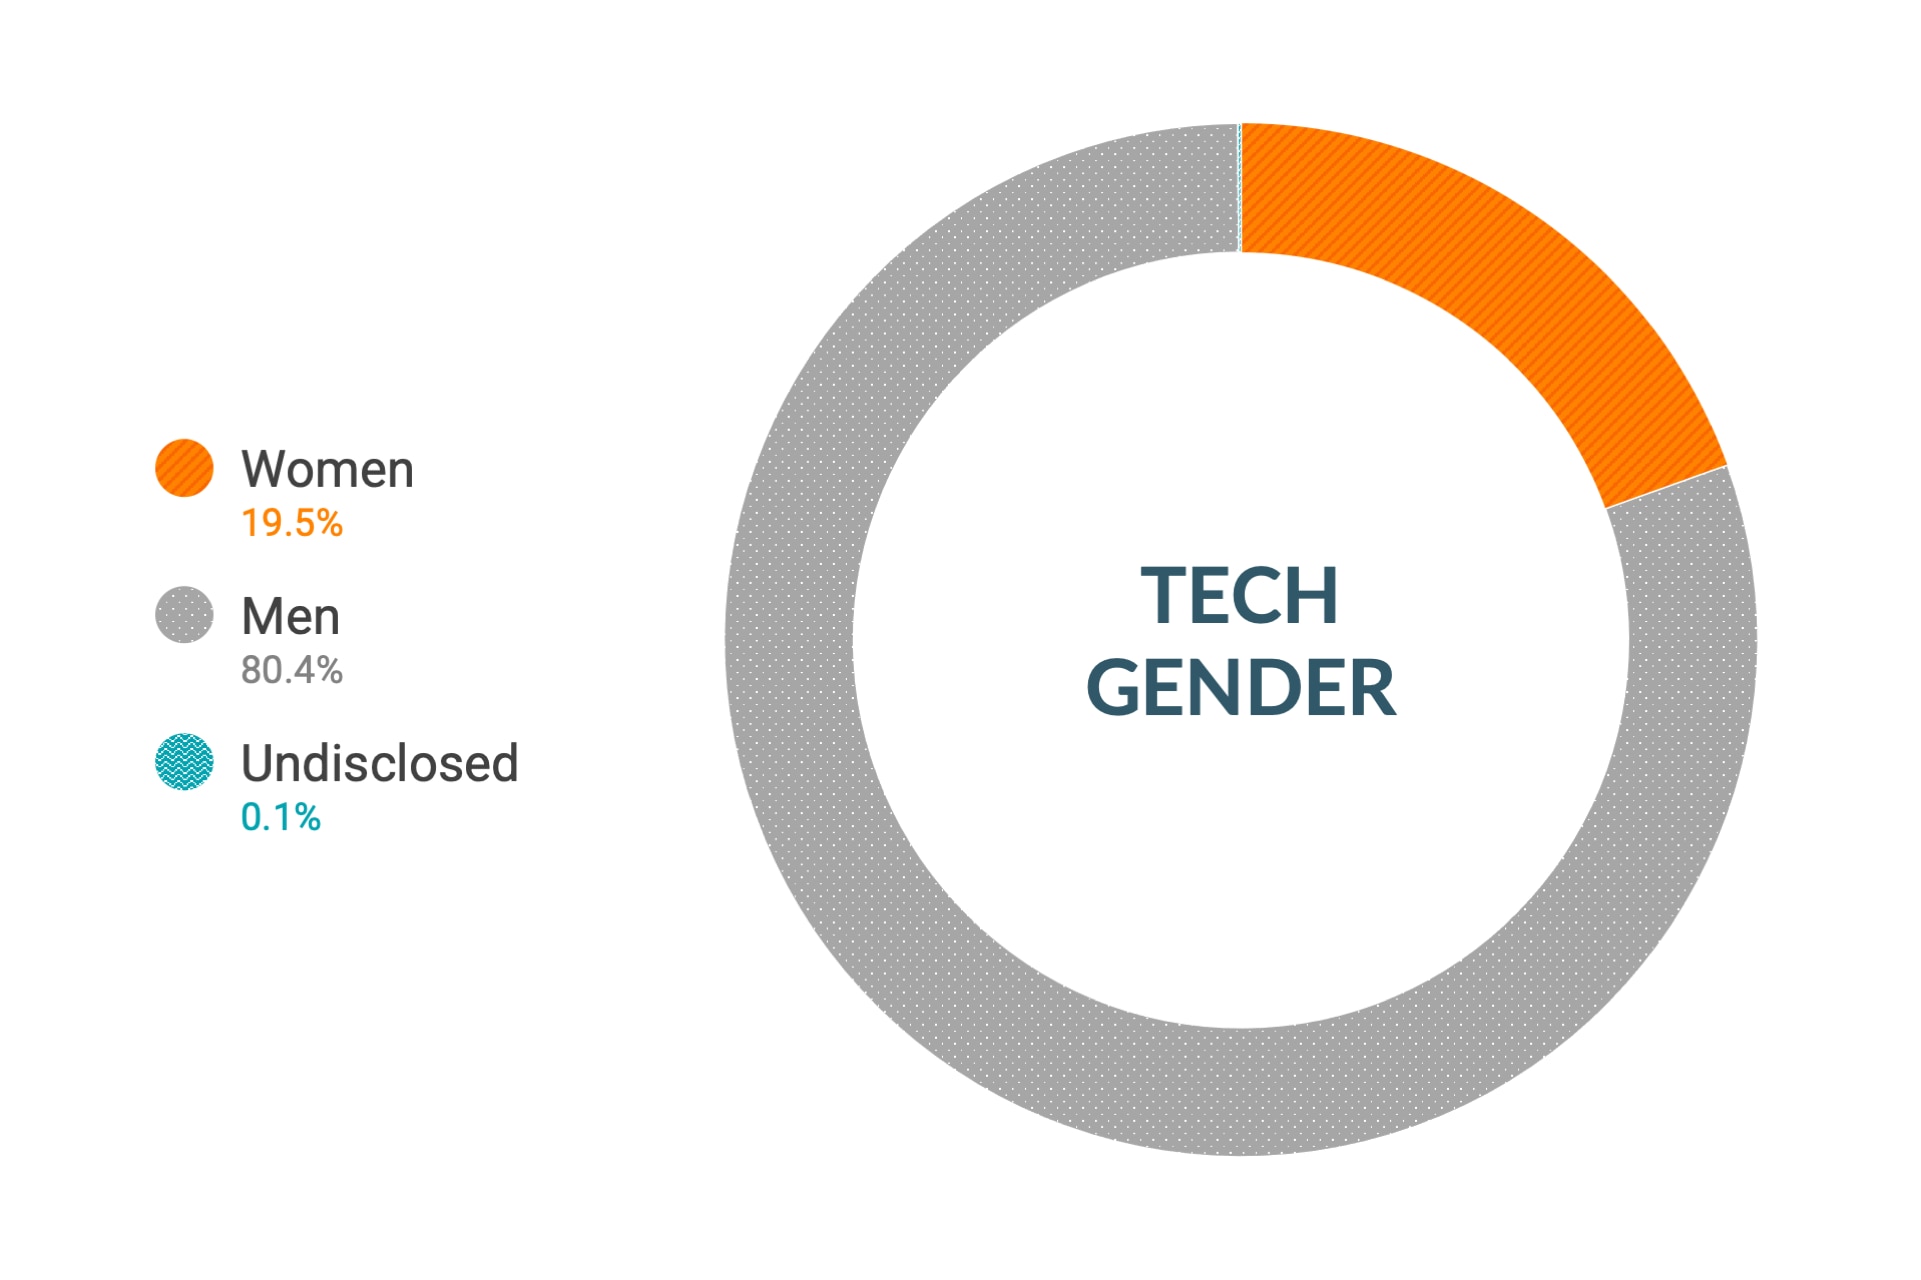 Dane firmy Cloudera dotyczące różnorodności i integracji dla płci wg stanowisk technicznych globalnie: kobiety 12%, mężczyźni 88%